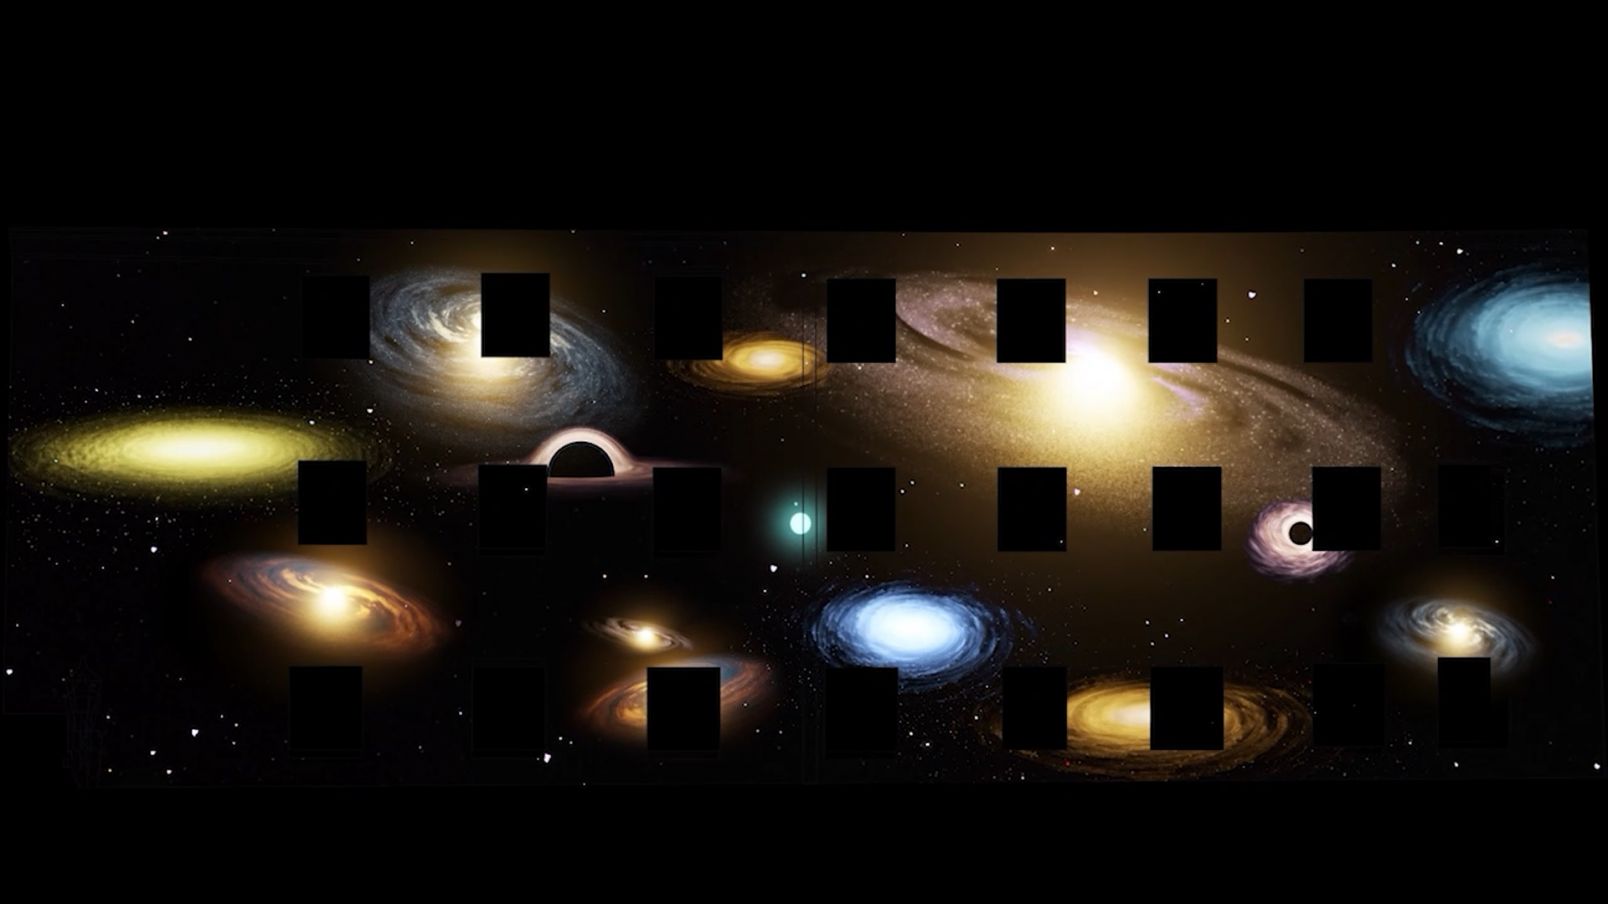 Kadr z instalacji "Inside Energy", przedstawia kosmos i różne galaktyki.